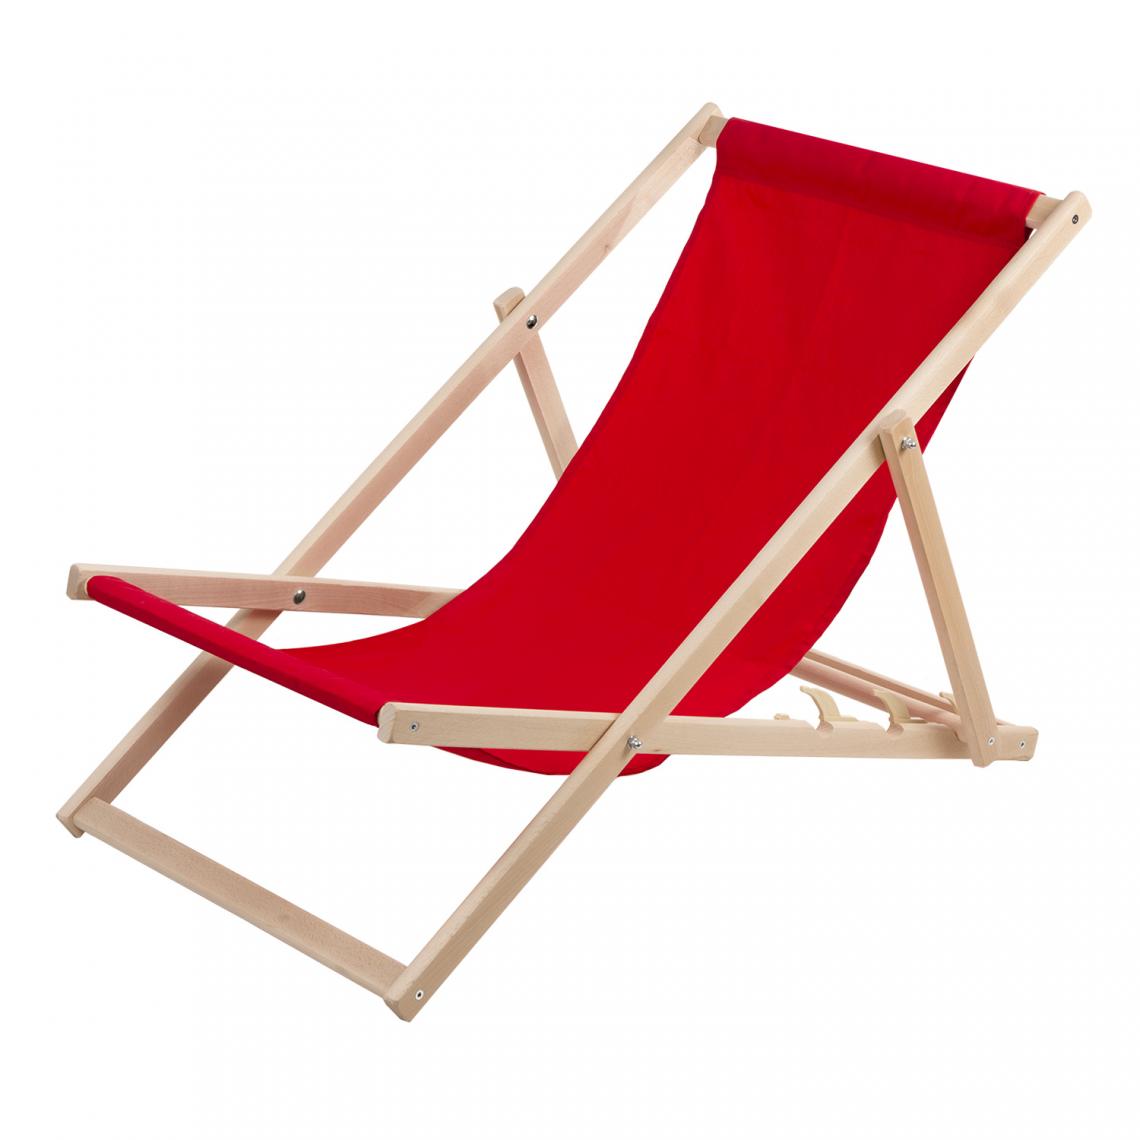 Sans Marque - Chaise longue Wood Ok confortable en bois rouge, idéale pour la plage, le balcon, la terrasse - Transats, chaises longues